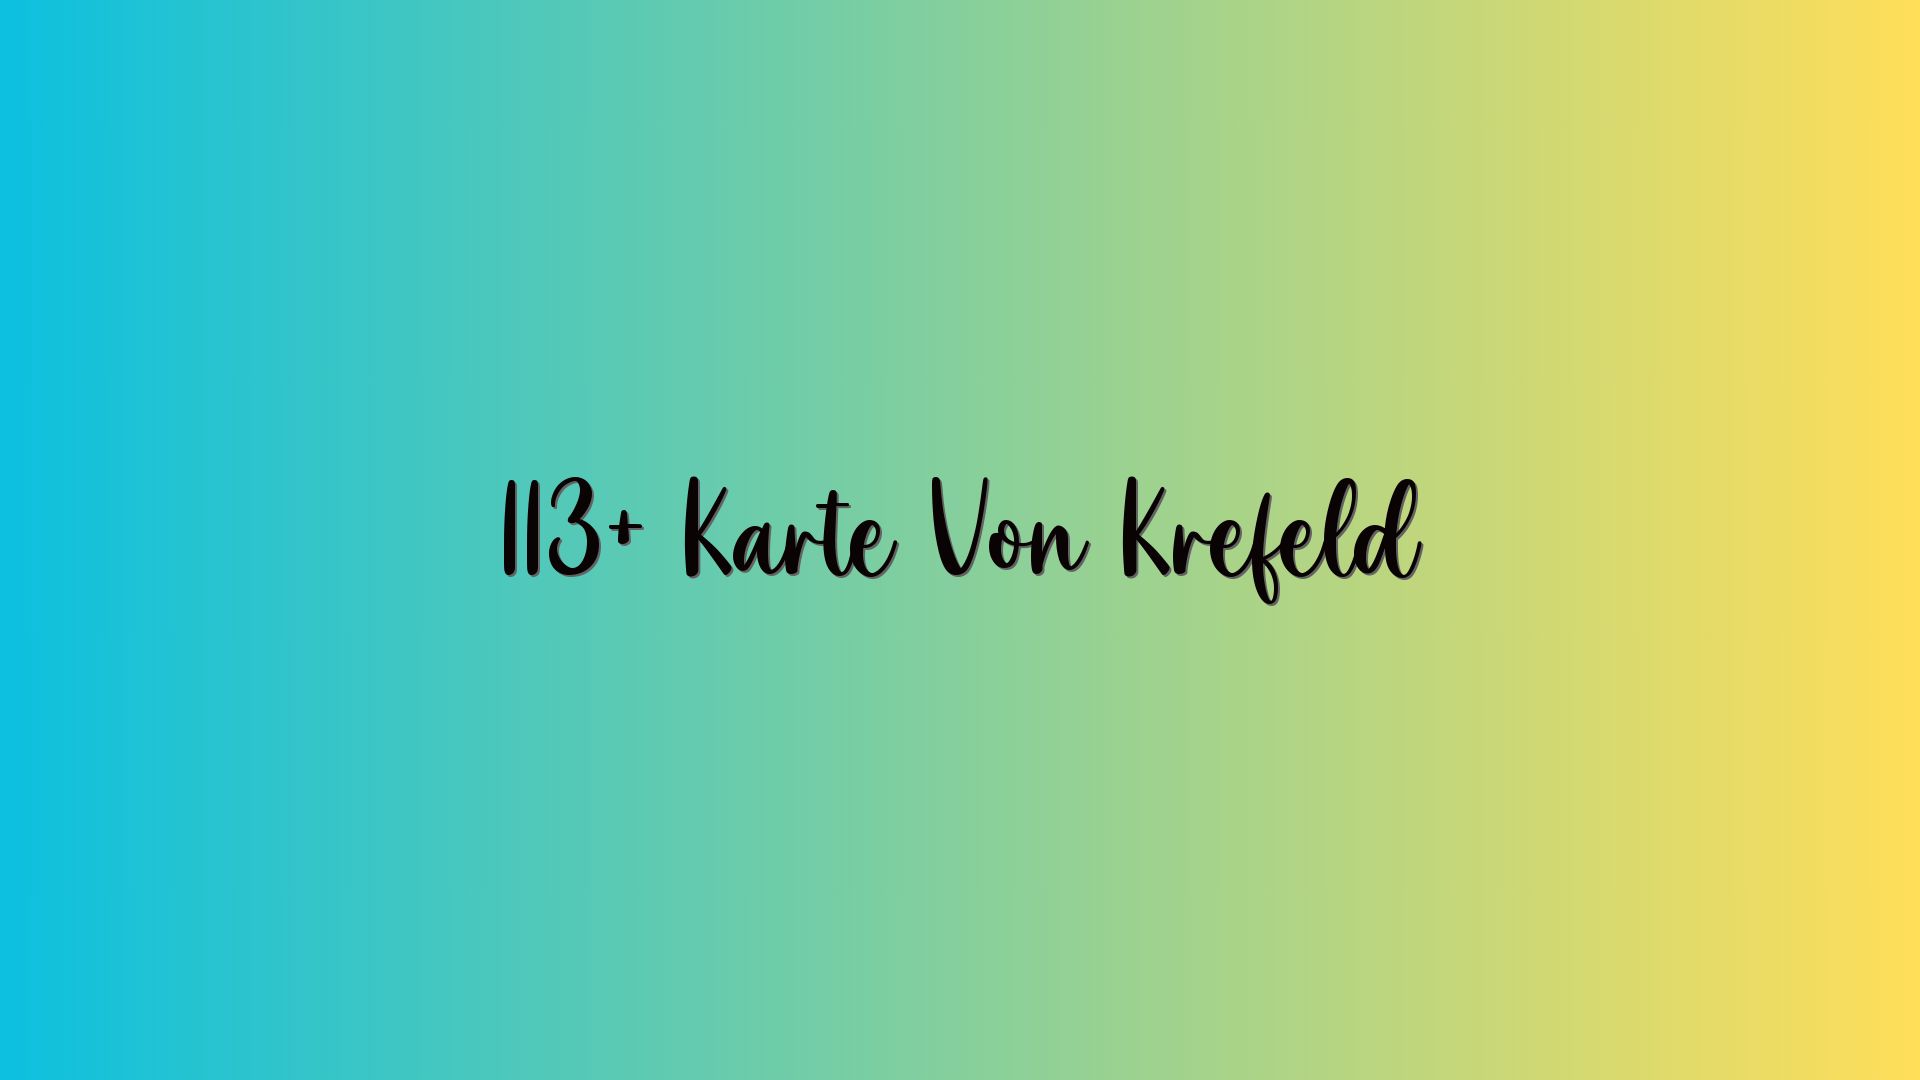 113+ Karte Von Krefeld